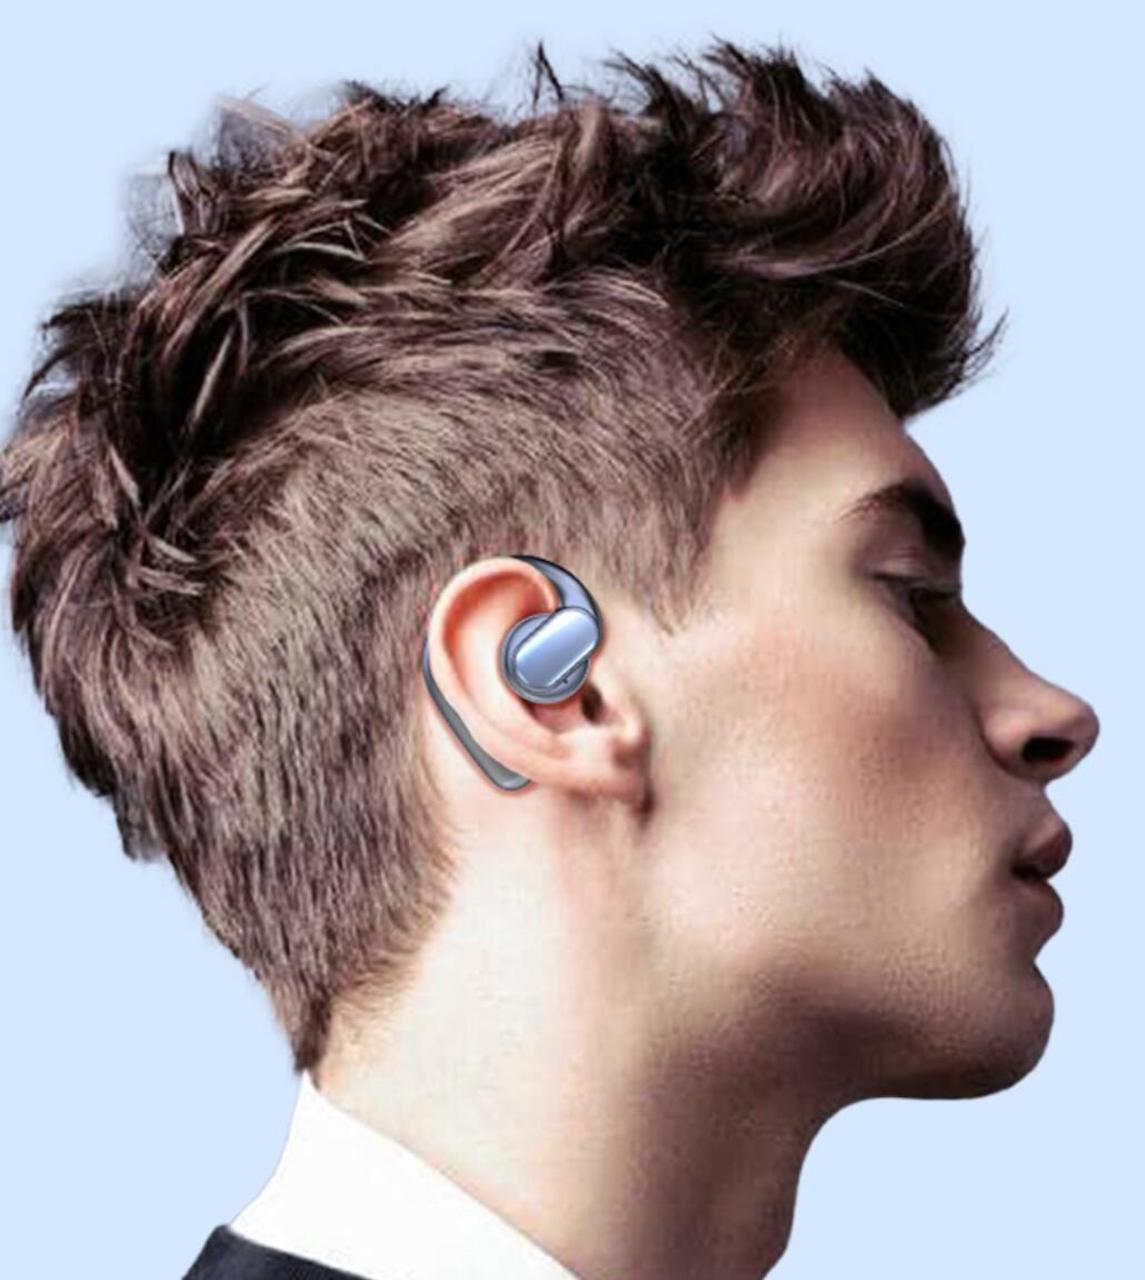 Bluetooth 5.3 Air S091: Högkvalitativt ljud & vattentätt